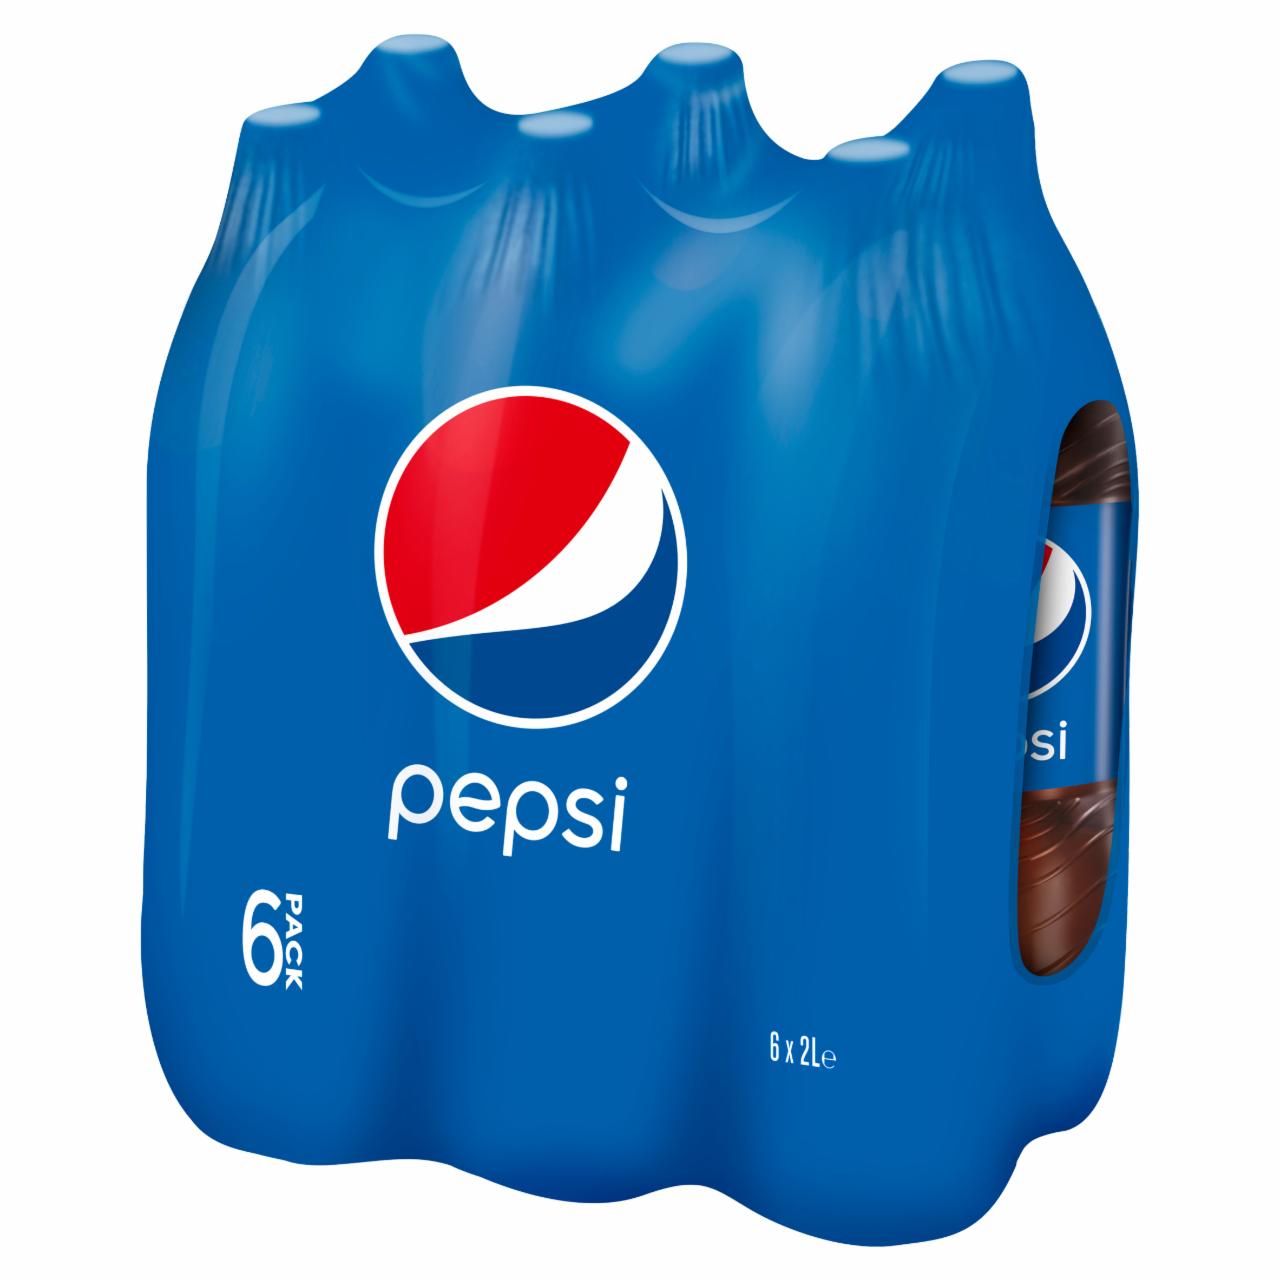 Zdjęcia - Pepsi Cola Napój gazowany 6 x 2 l